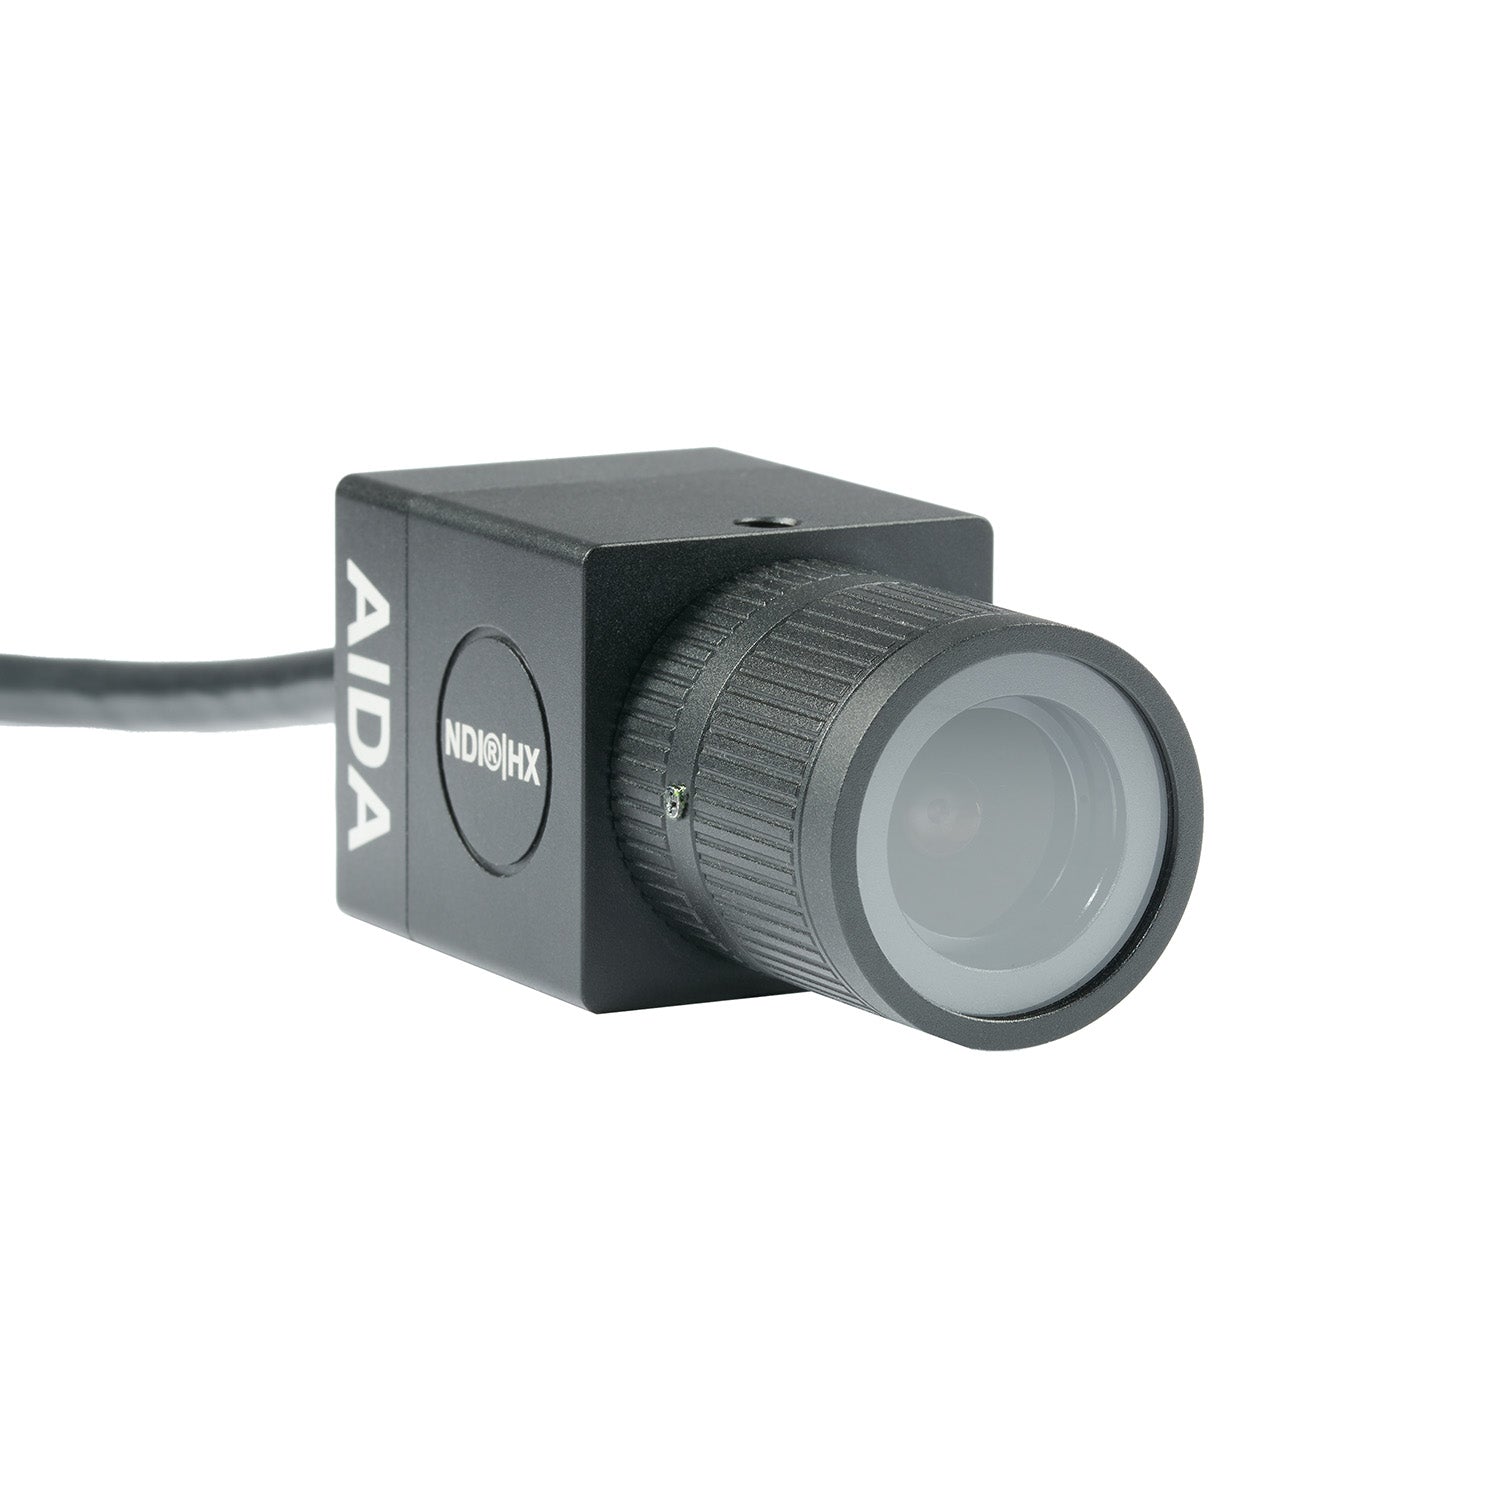 AIDA Imaging HD-NDI-VF - HD NDI|HX POV Camera, Vari-focal Lens, front right